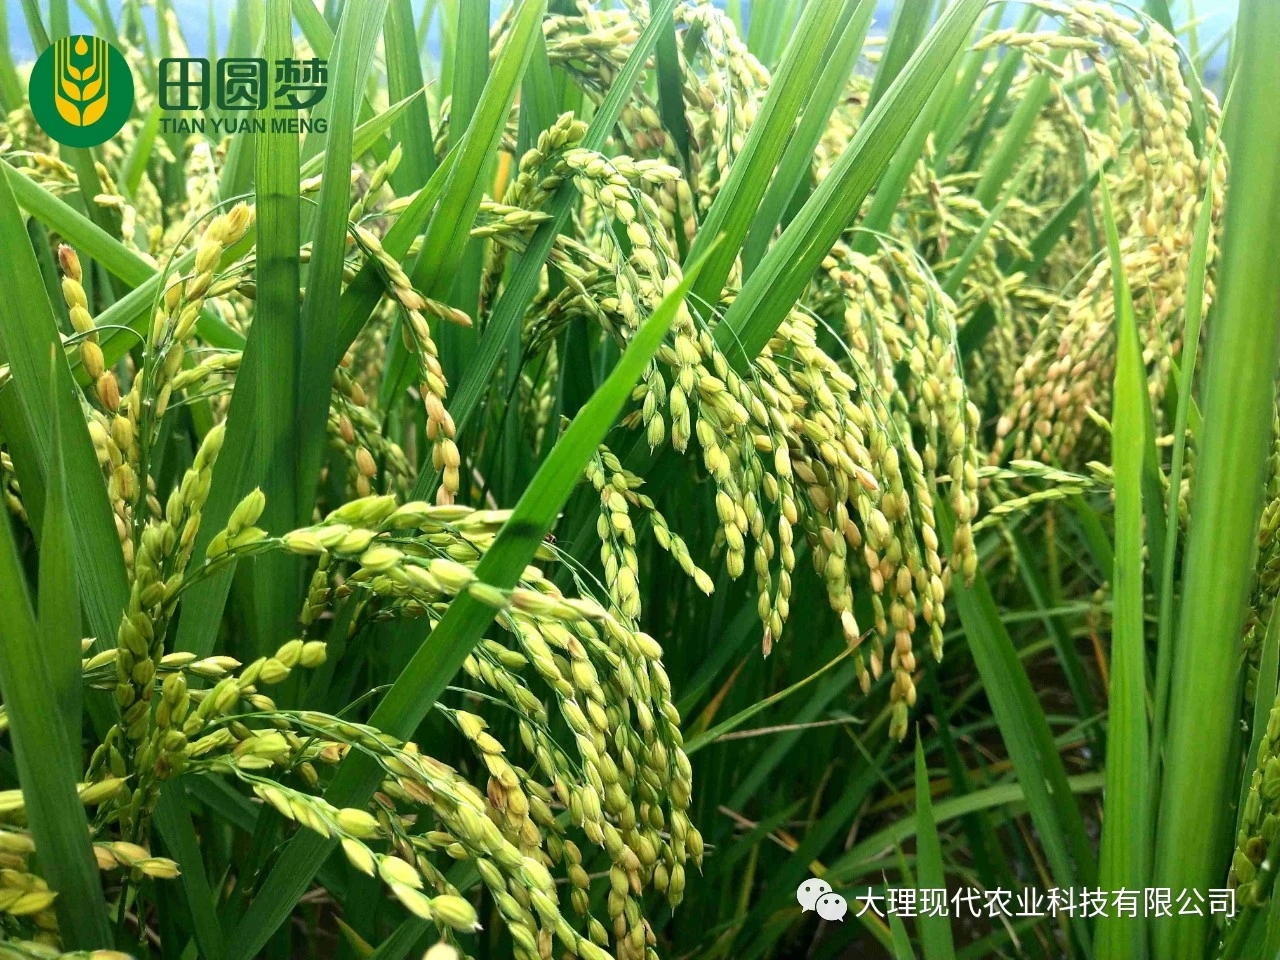 田圆梦有机水稻标准化种植基地迎来丰收季！